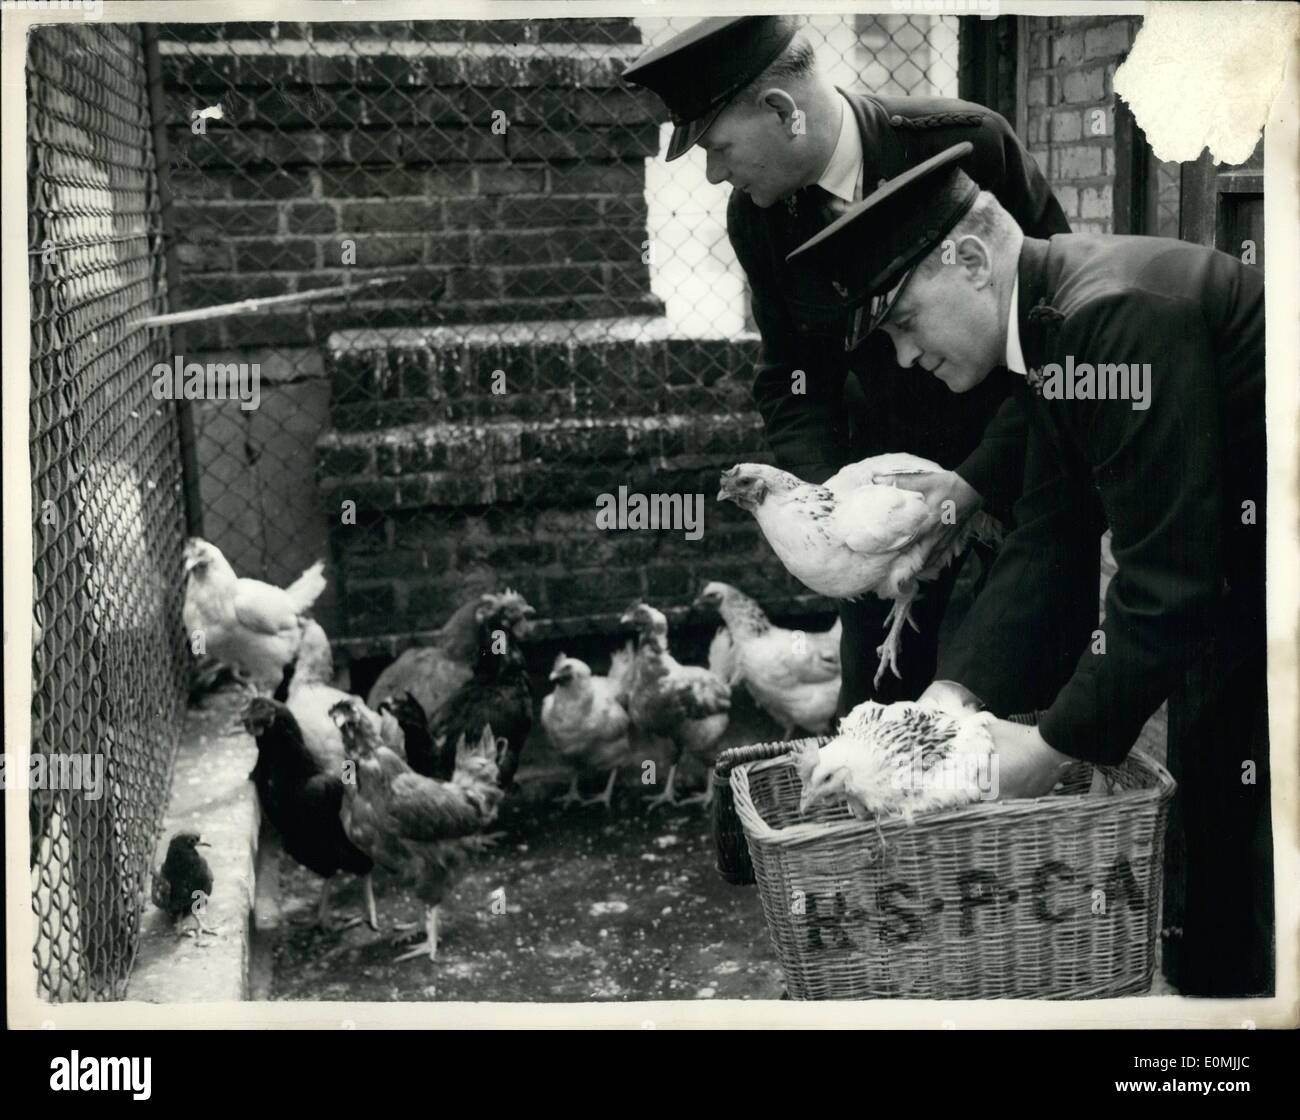 Giugno 06, 1955 - Galli e galline vengono visualizzati nel caso in cui al Guildhall corte.: un uomo è stato addebitato al Guildhall questa mattina con il convogliamento 13 uccelli in modo da causare sofferenza. Uno è morto e dodici sono stati messi nella cura dell'R.S.P.C.A. L'uomo è stato apprenhended con gli uccelli in sacchi in una ripresa rottura in houndsditch, ieri pomeriggio.: mostra fotografica R.S.P.C.A. ispettori, W. Jones e G. Goodes, visto ponendo gli uccelli in cesti, all'R.S.P.C.A. Sede centrale, Jermyn Street, questa mattina per convogliare al Guildhall corte questa mattina. Foto Stock